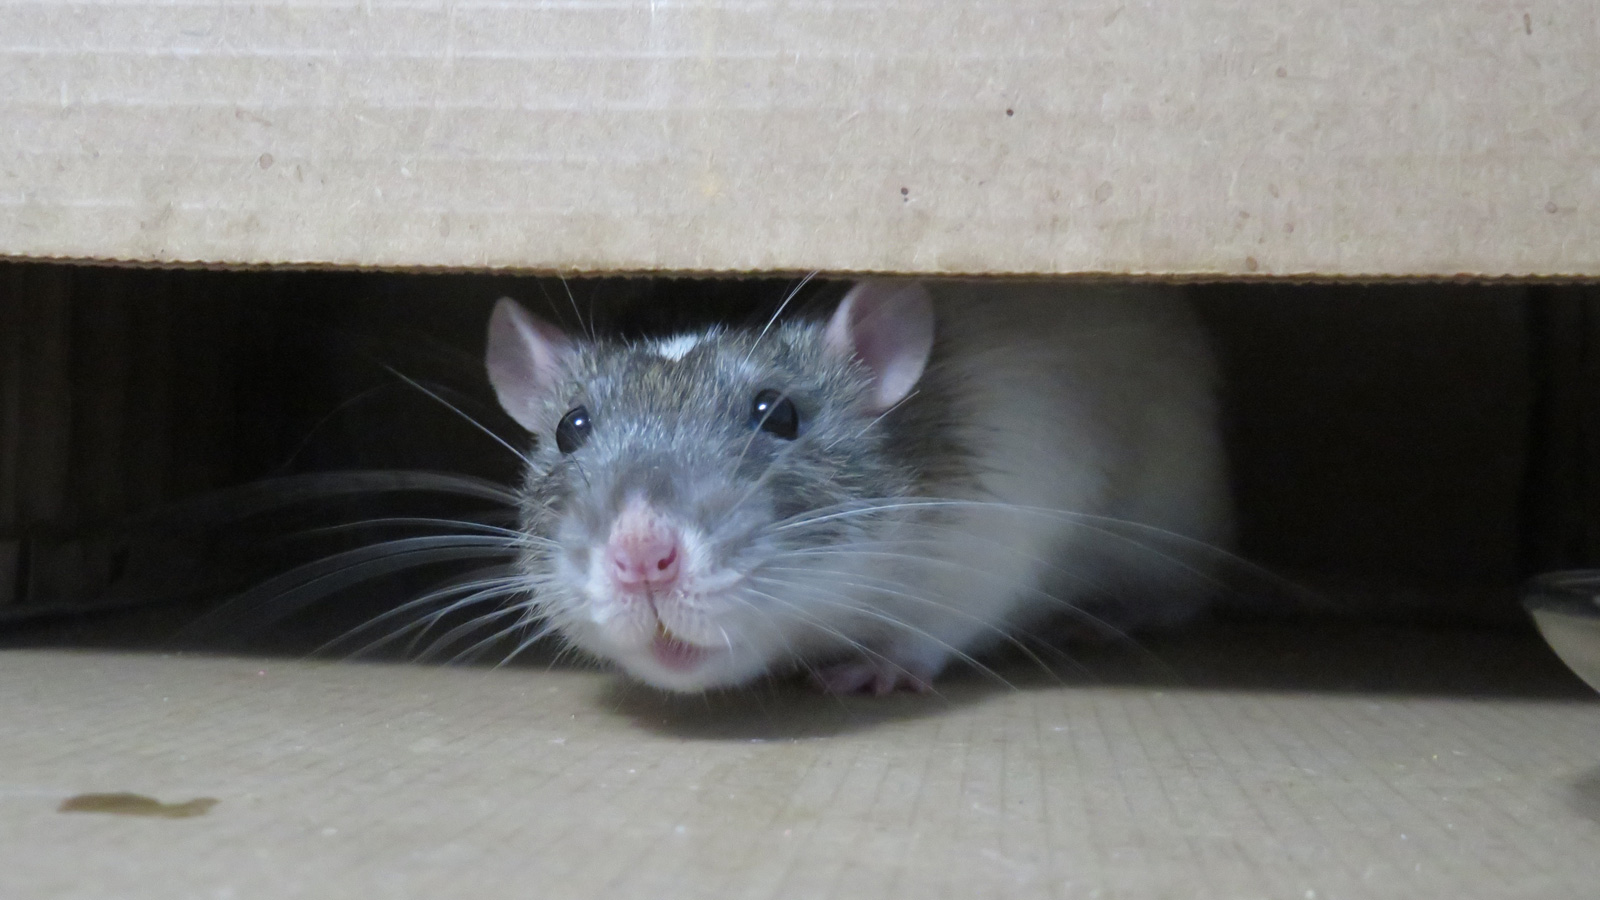 Rat hiding under furniture